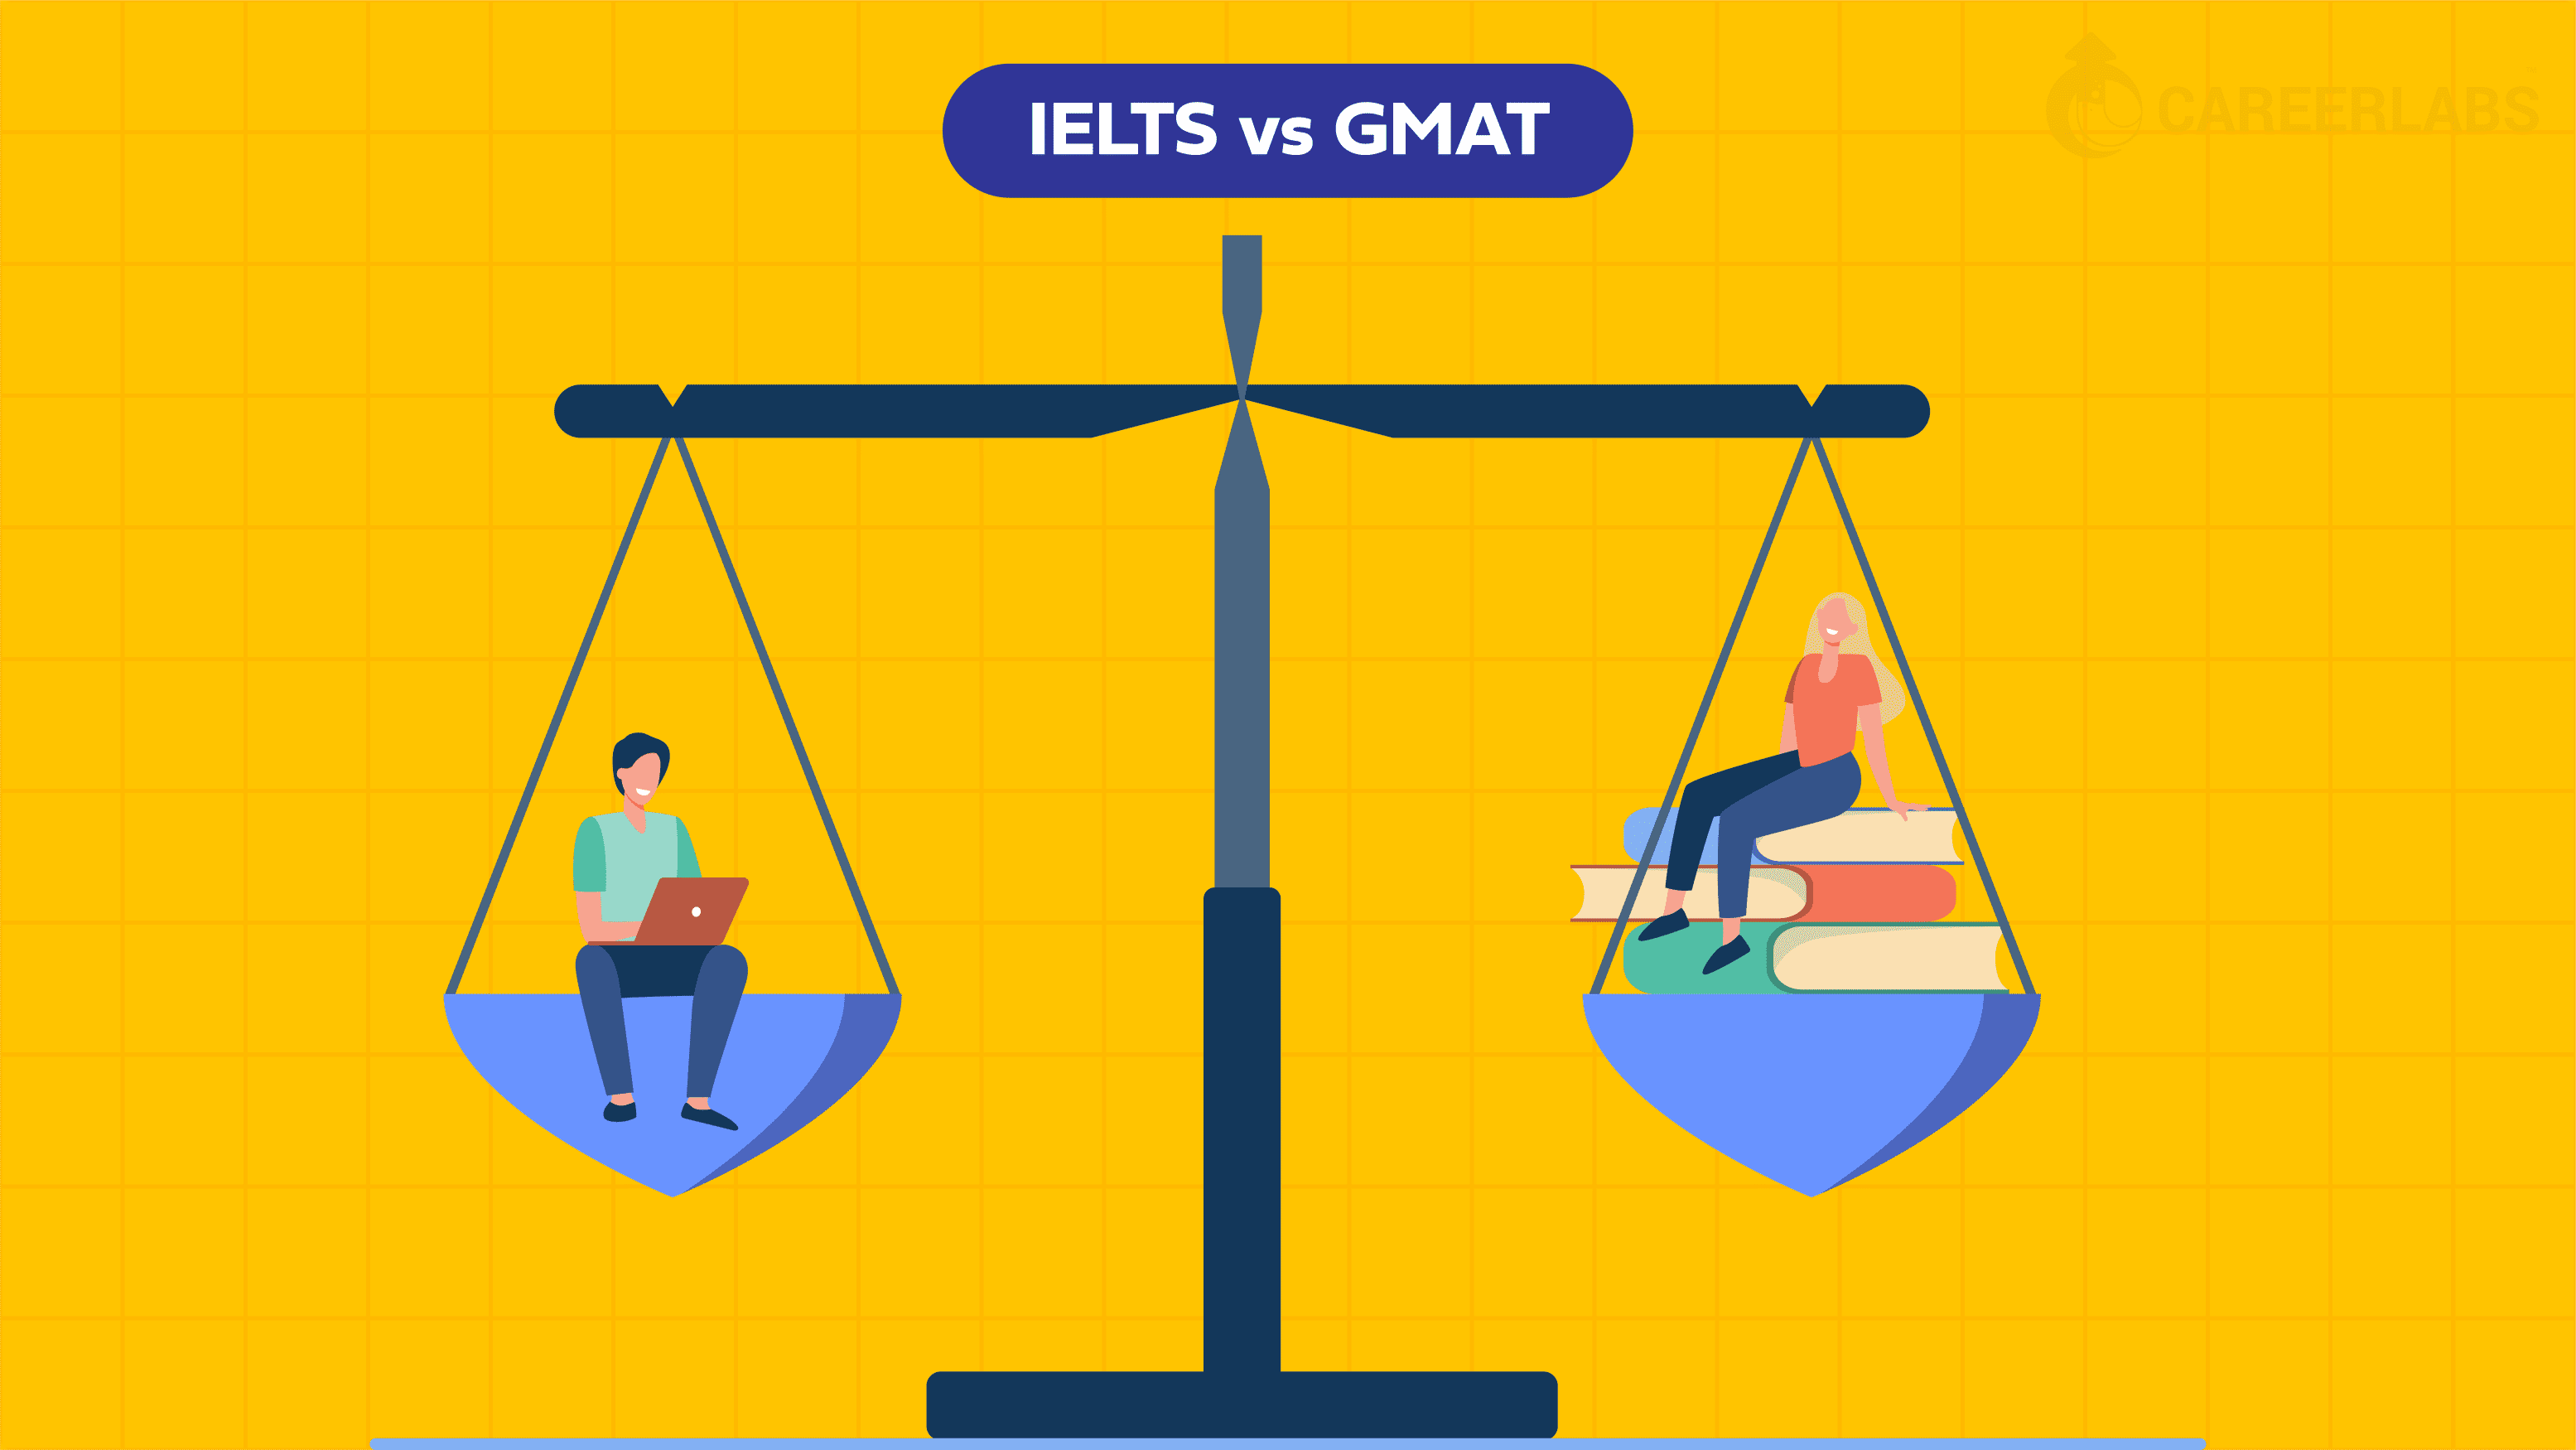 IELTS vs GMAT